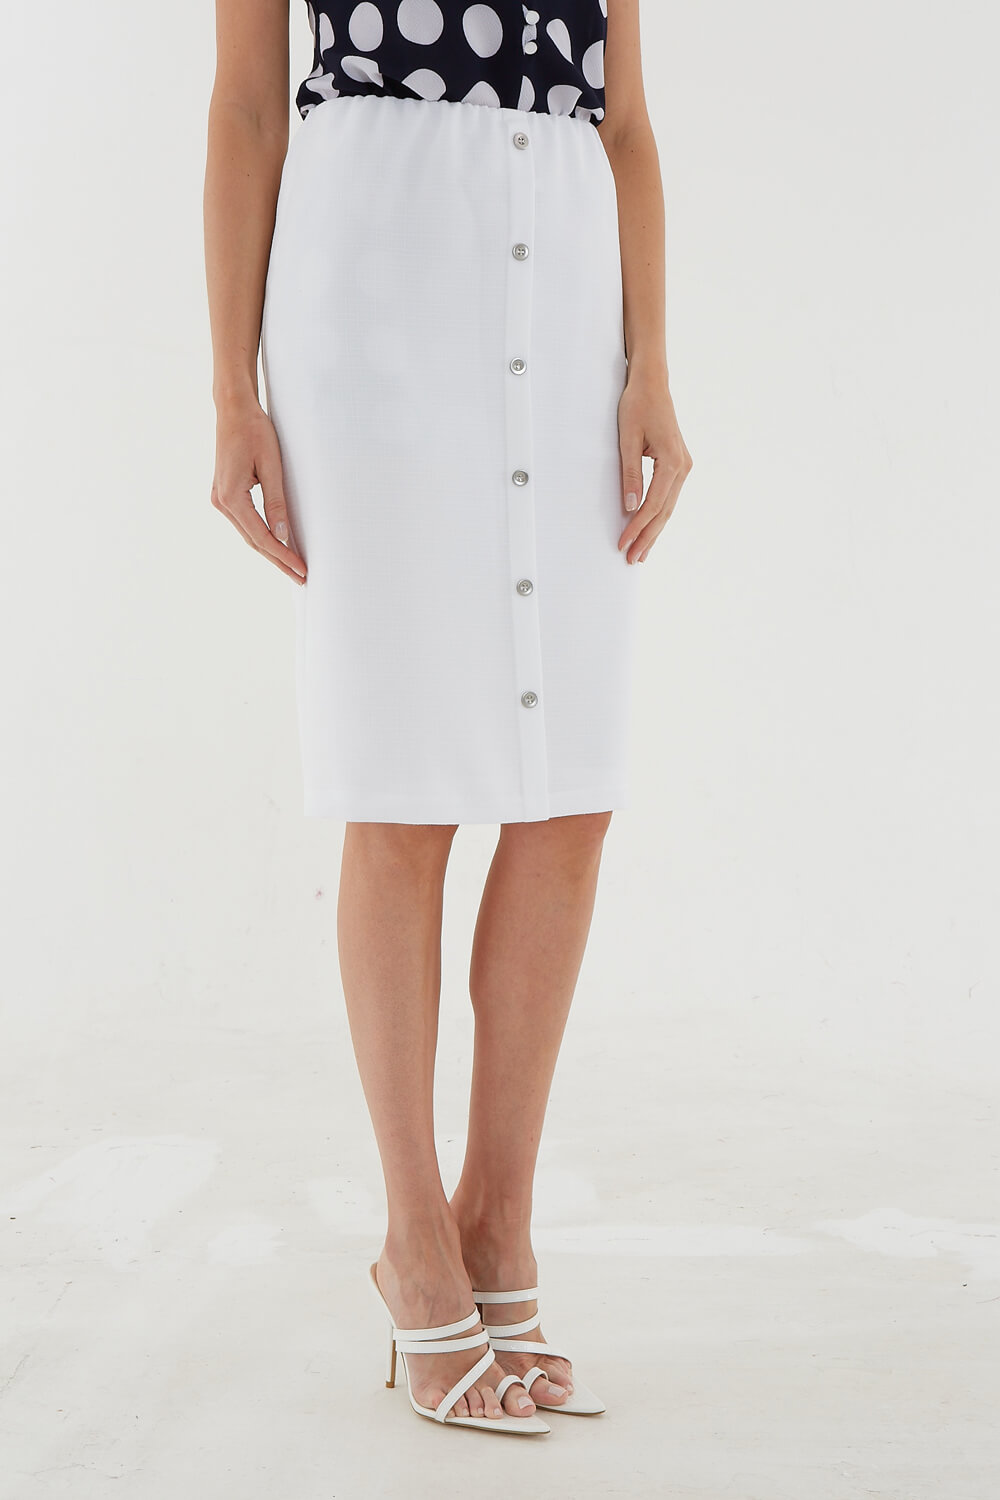 White Julianna Knee Length Button Skirt, Image 2 of 4